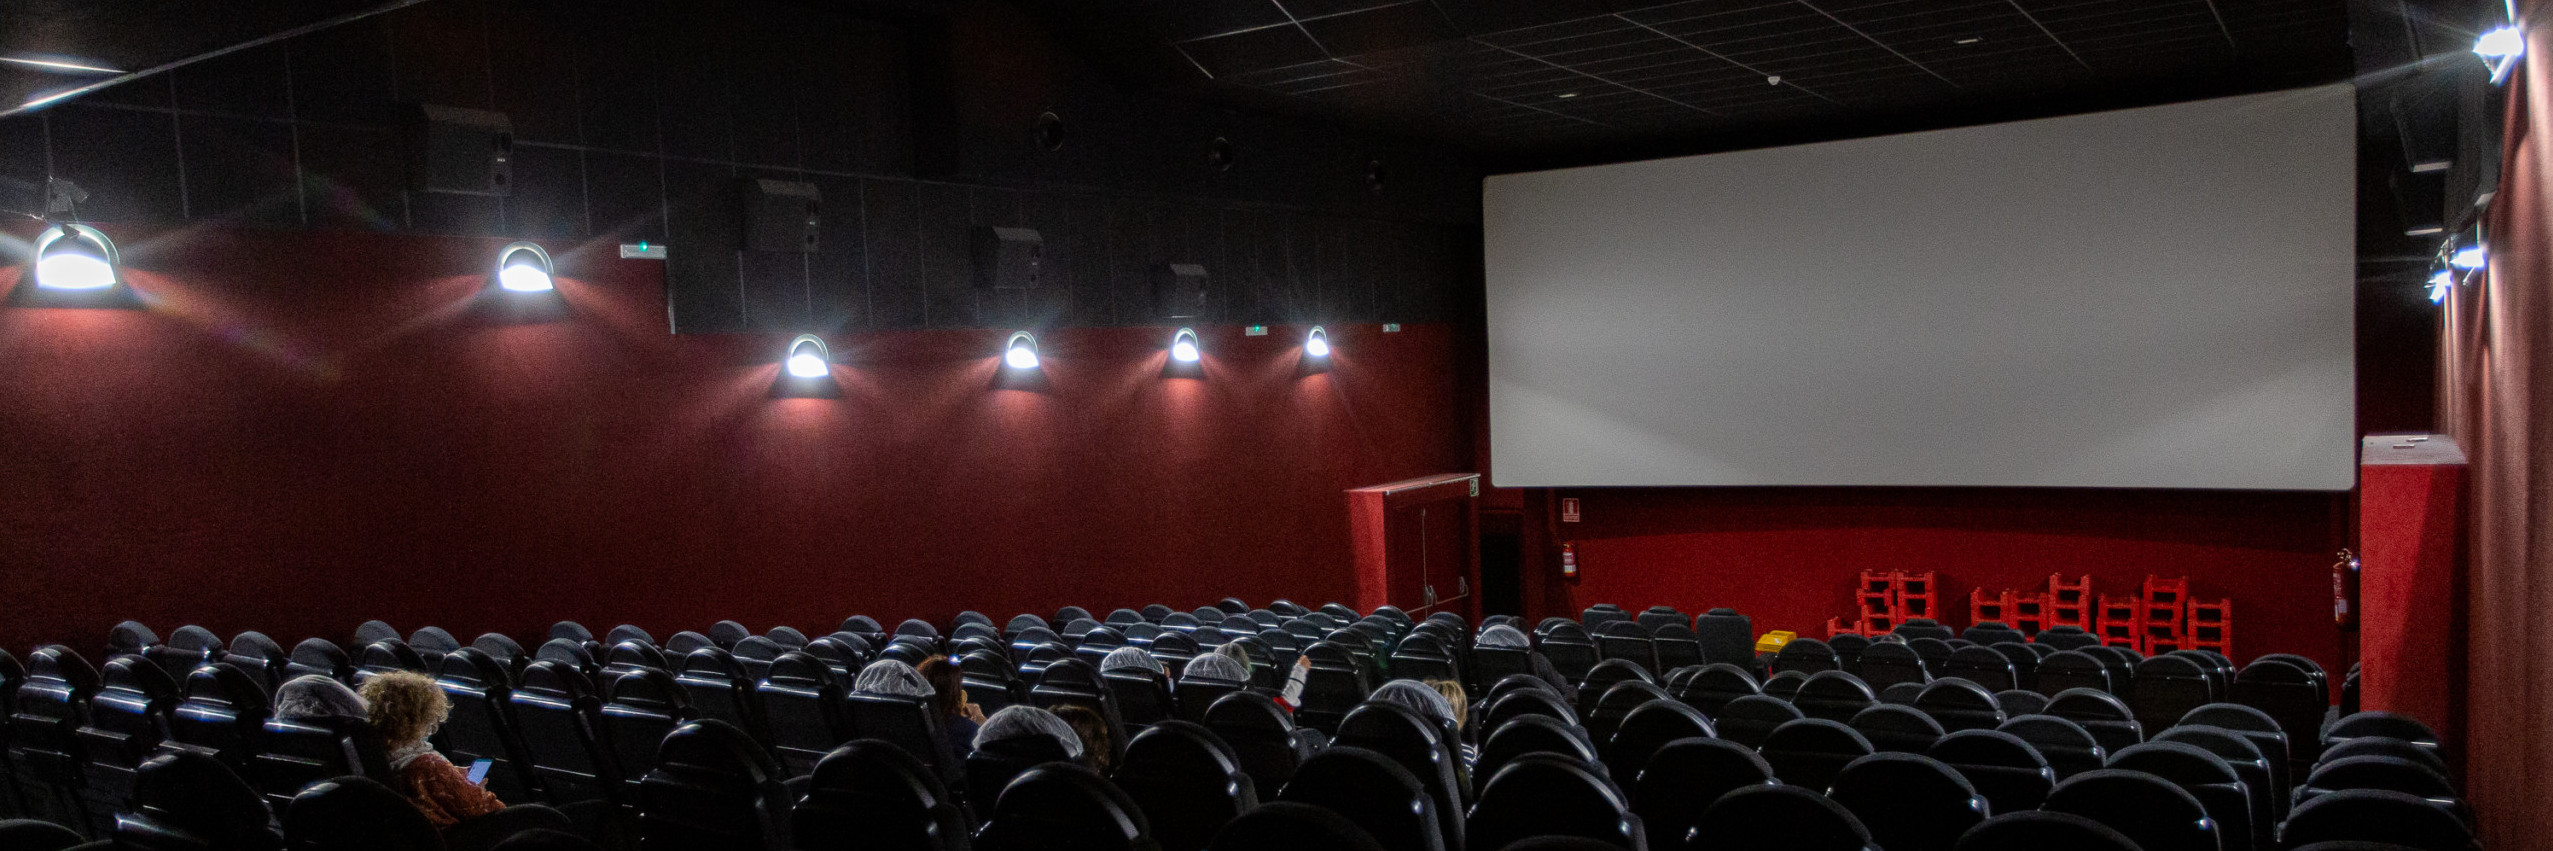 El cine es la actividad más afectada por la Covid: ha perdido a casi la mitad de sus trabajadores